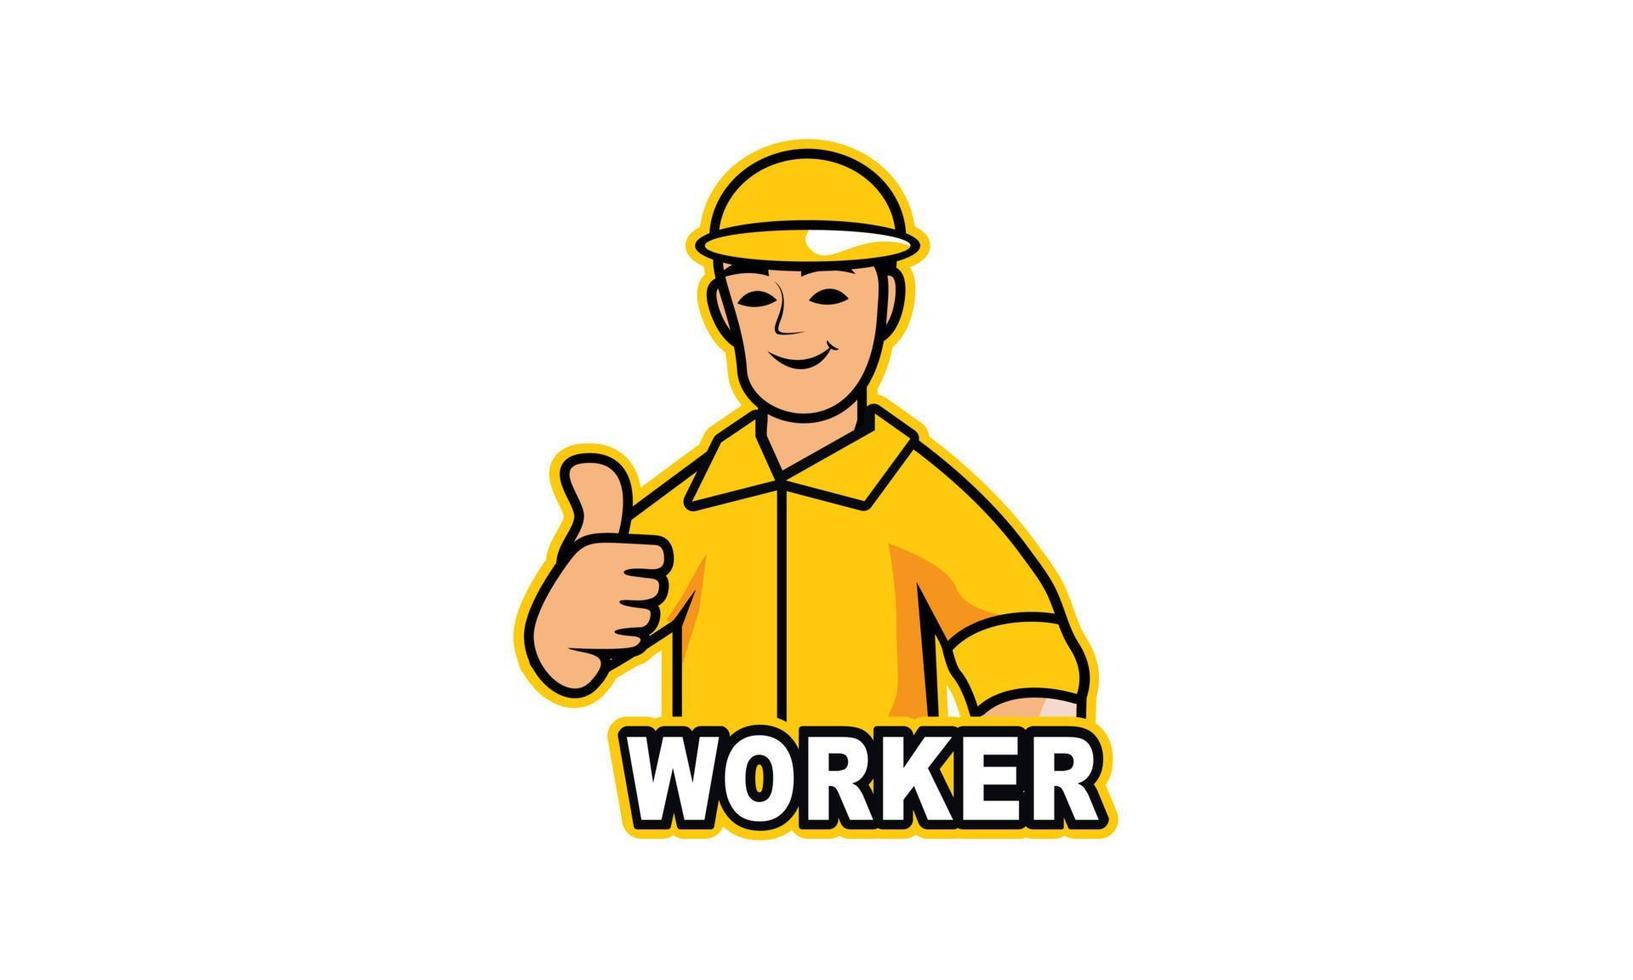 Servicio trabajador logo vector ilustración